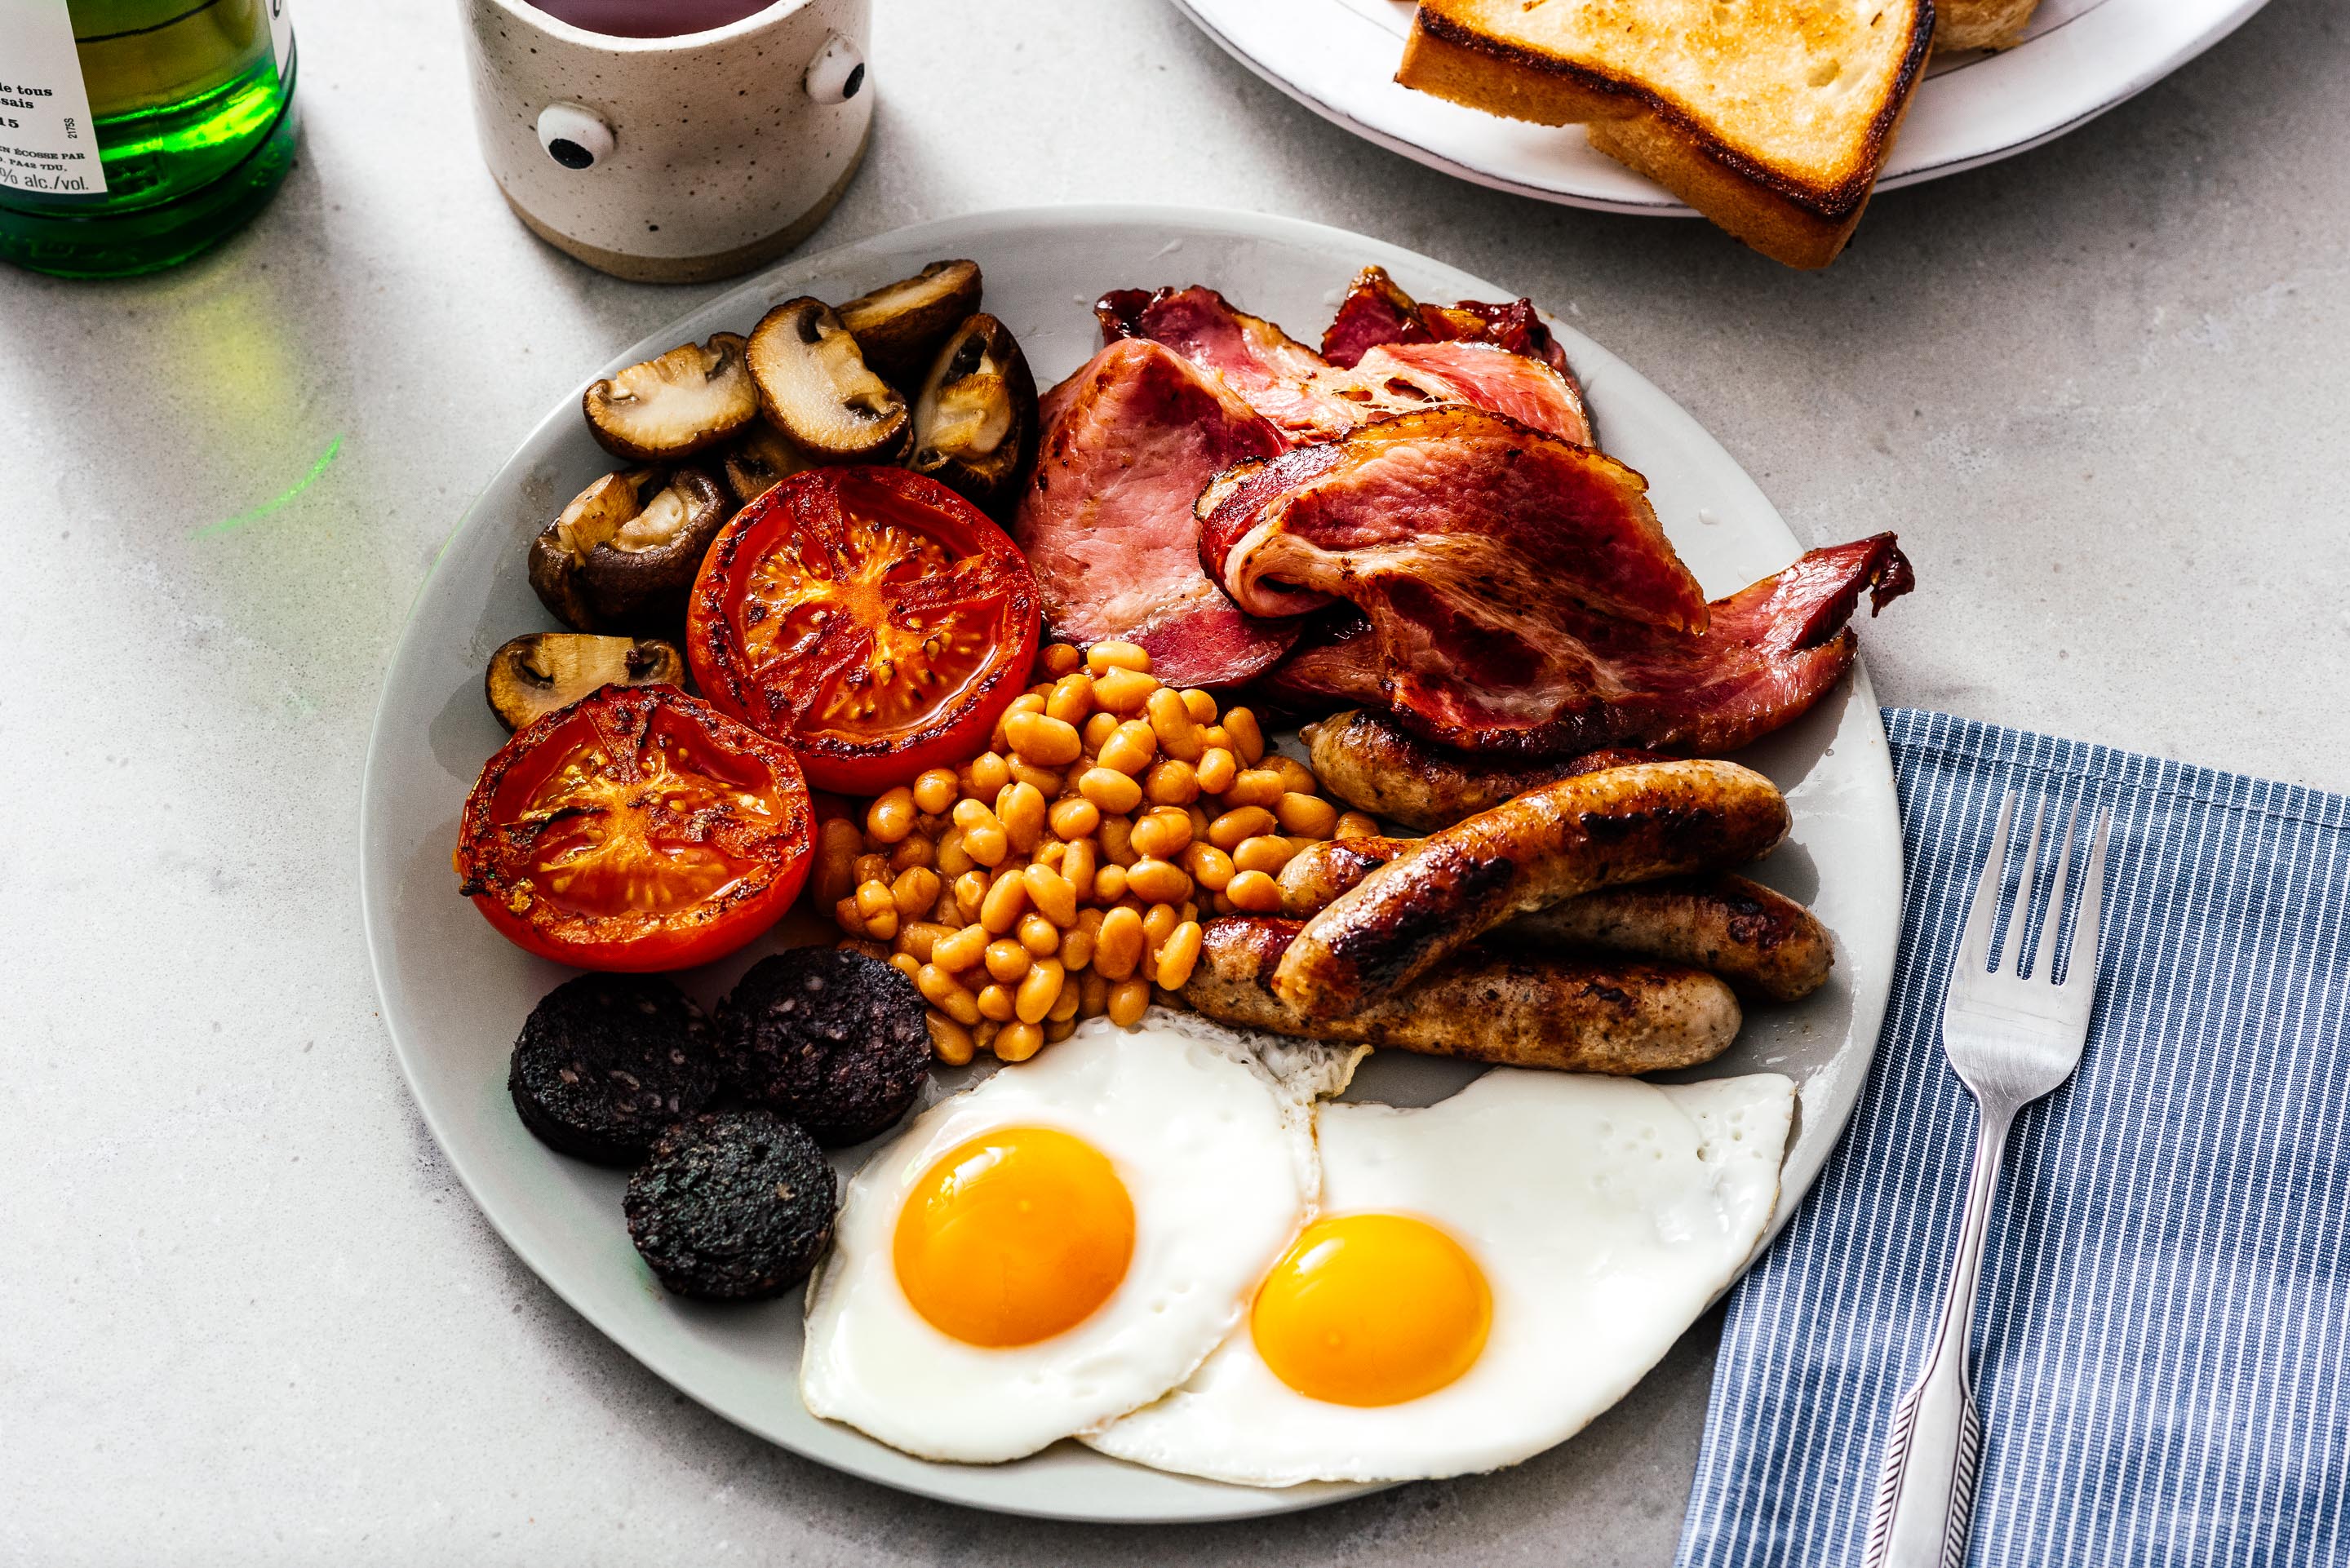 Английский завтрак 4. Бритиш Брекфаст. Английский завтрак Британия. Full English Breakfast знаменитый английский завтрак. Традиционный завтрак в Англии.